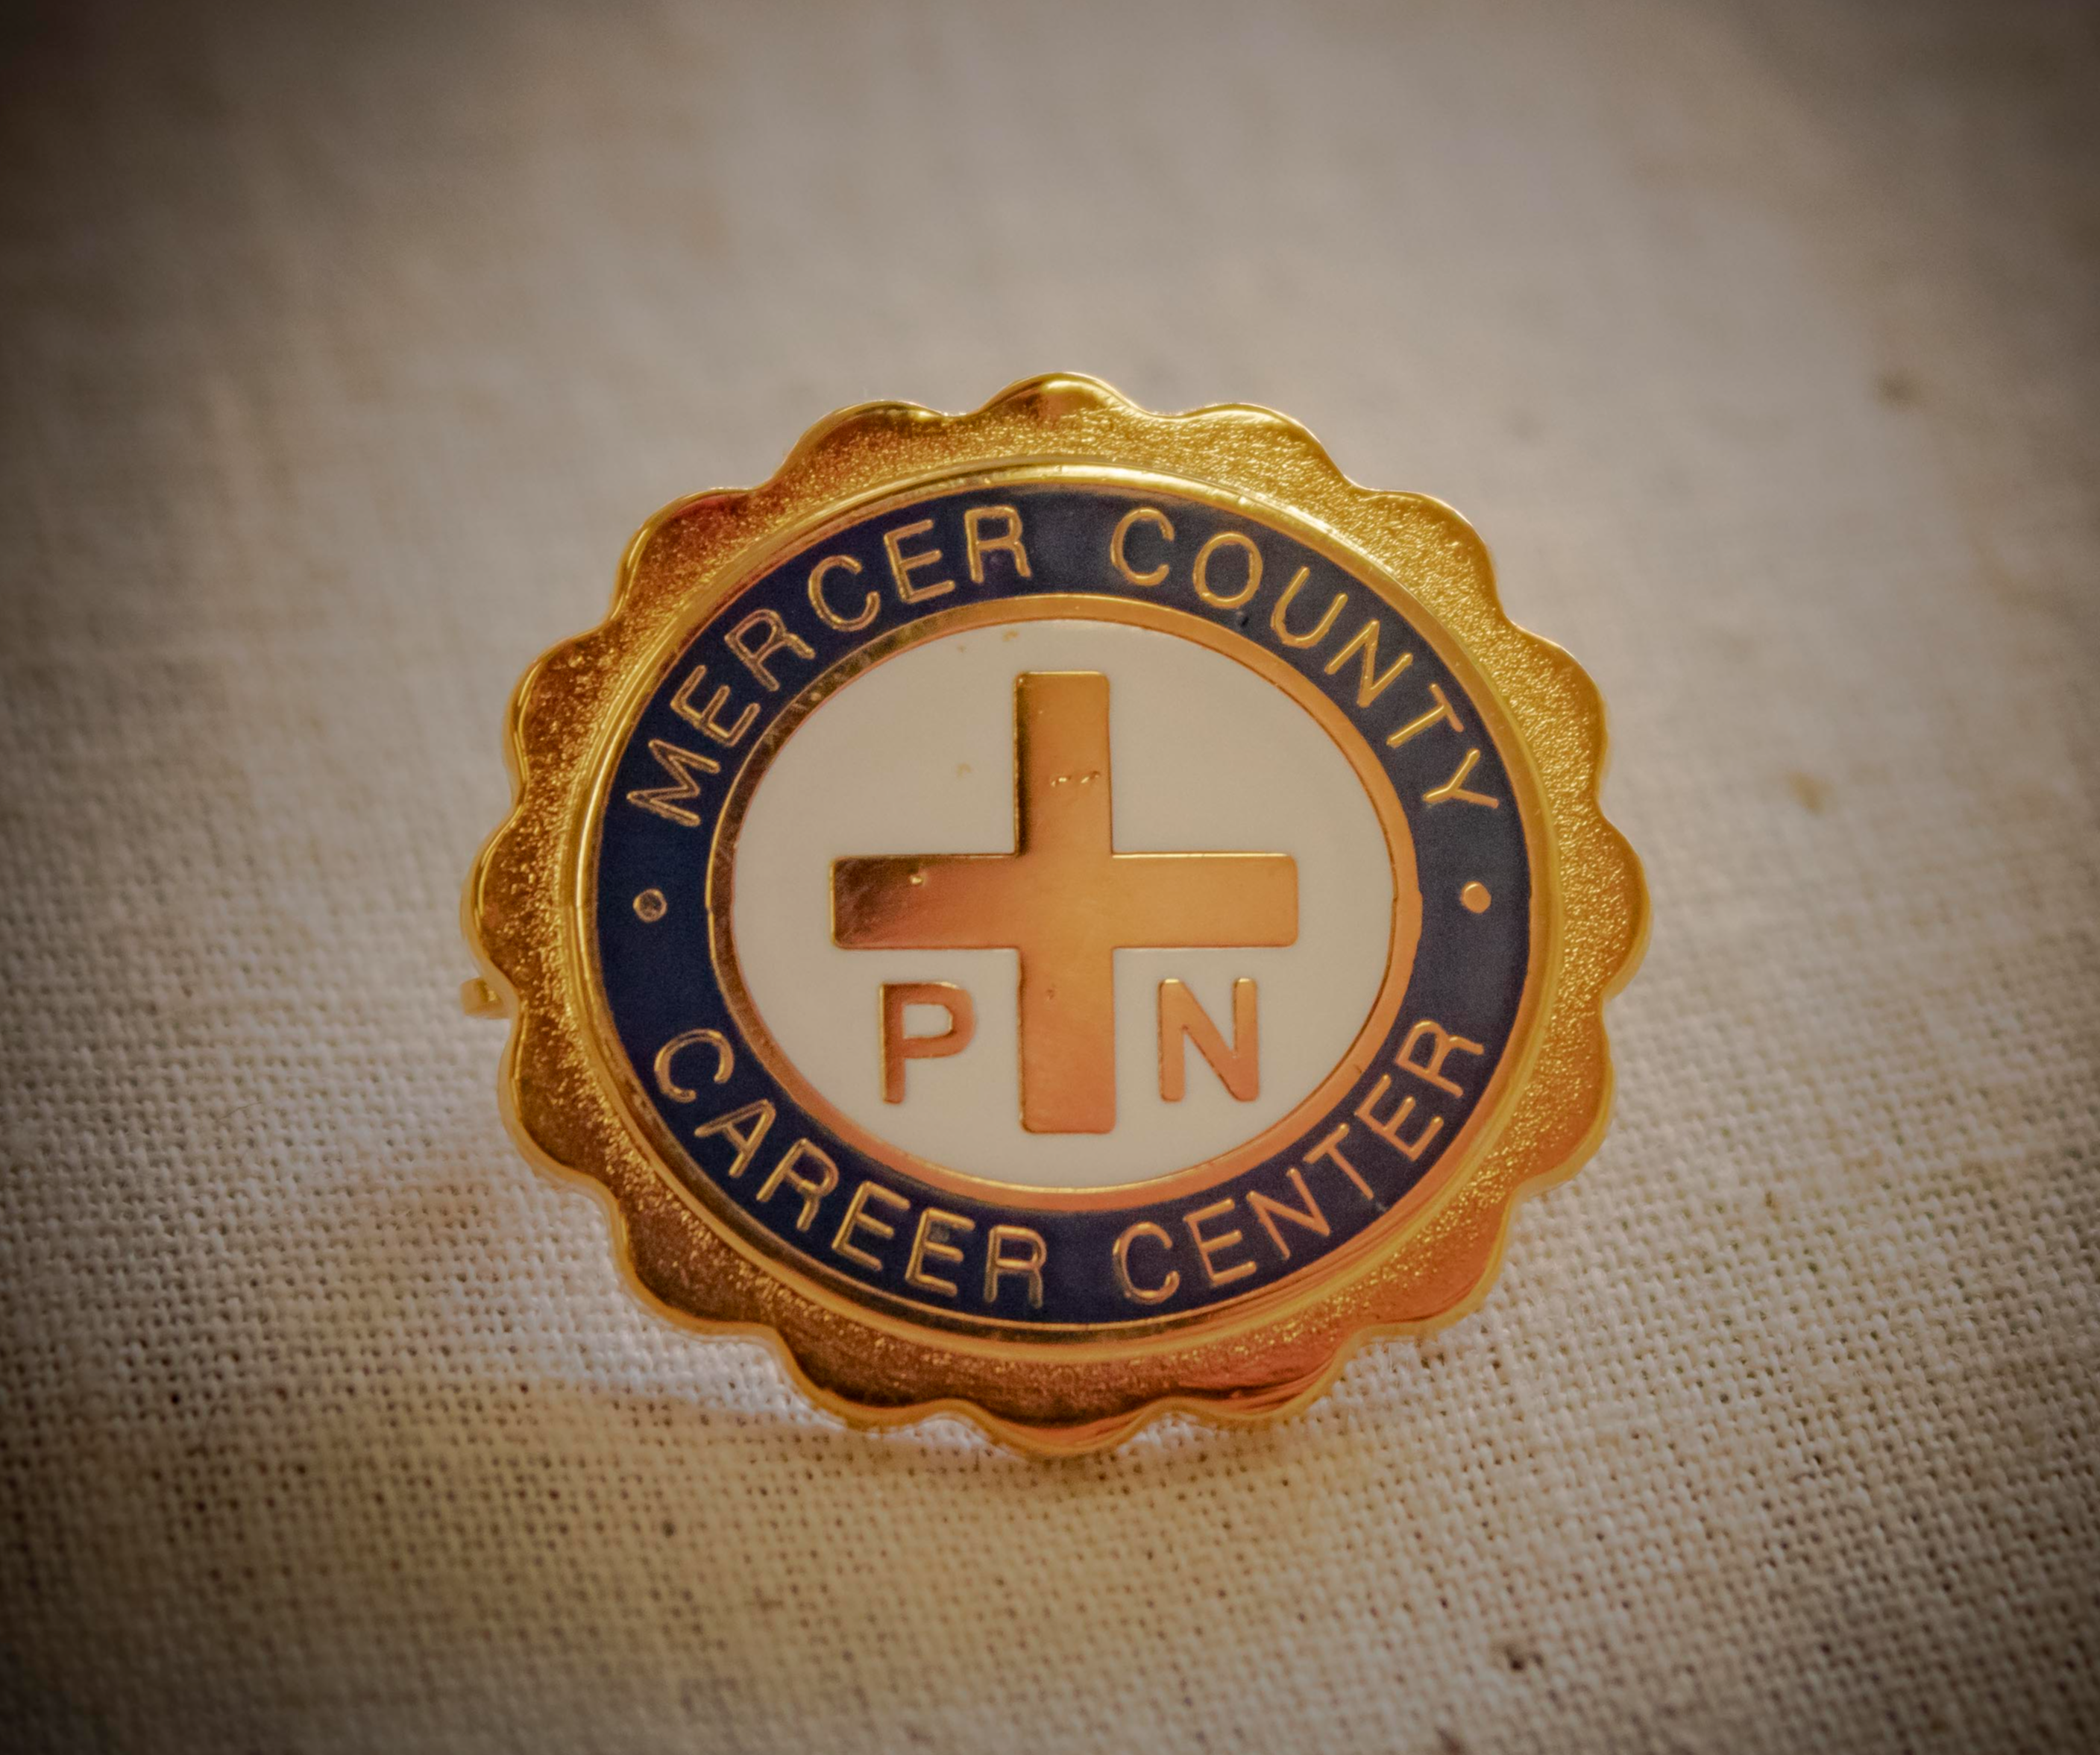 Mercer County Career Center